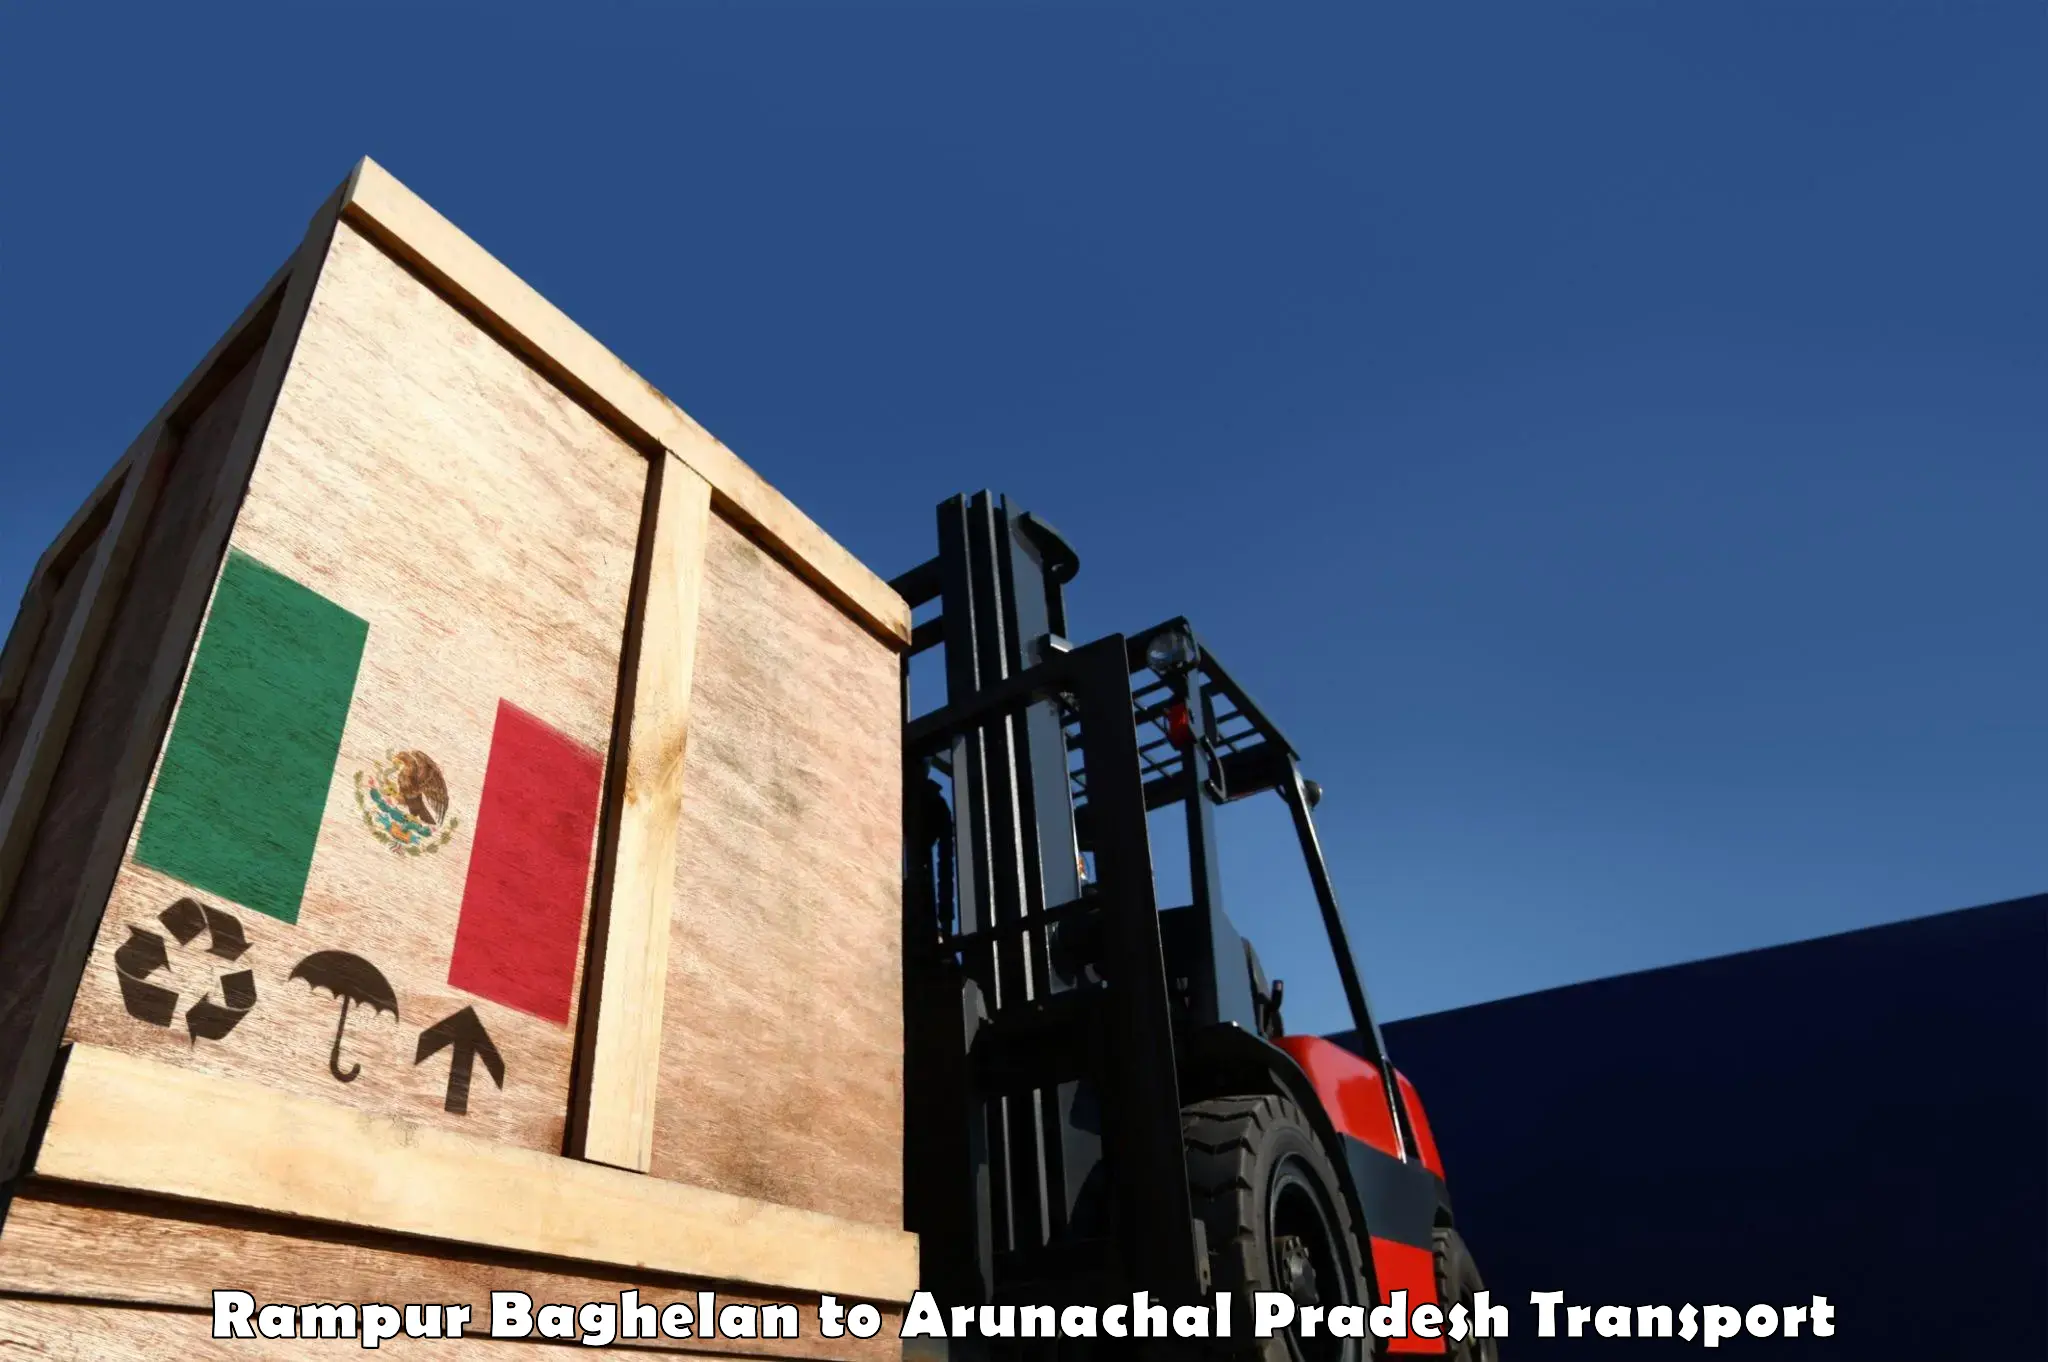 All India transport service Rampur Baghelan to Tirap